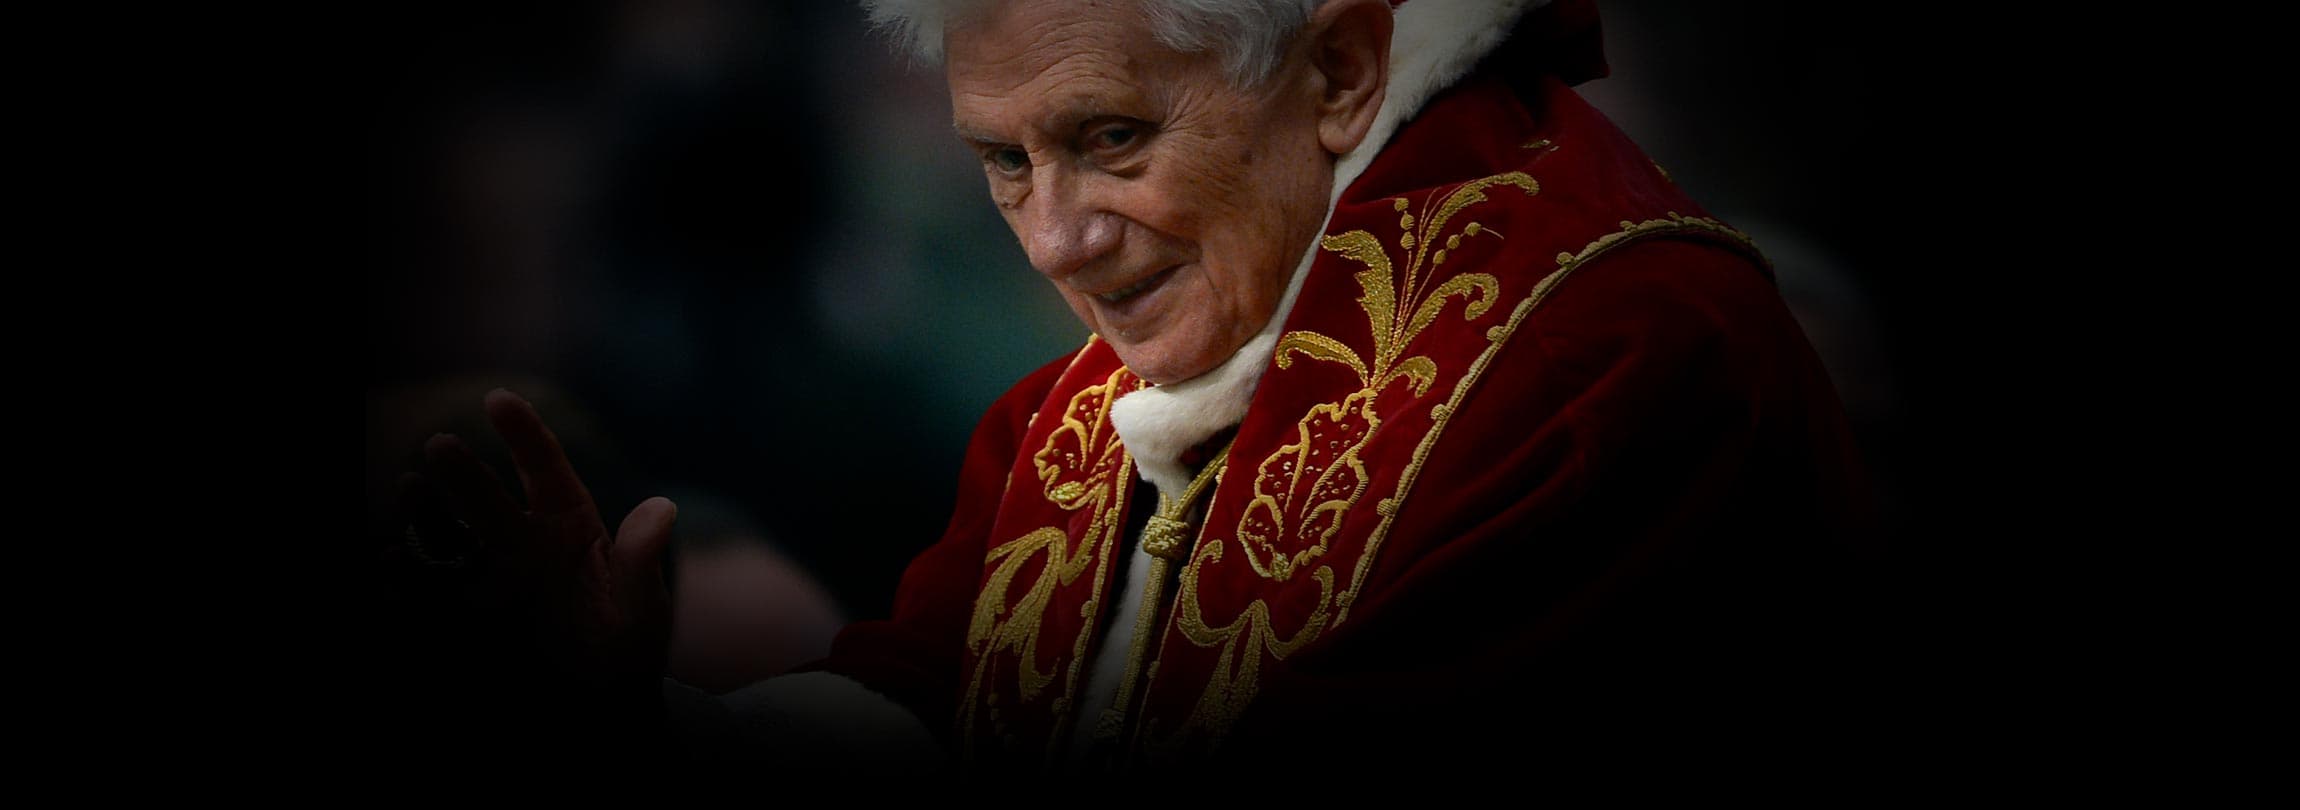 Discurso do Papa Bento XVI na apresentação de votos natalícios